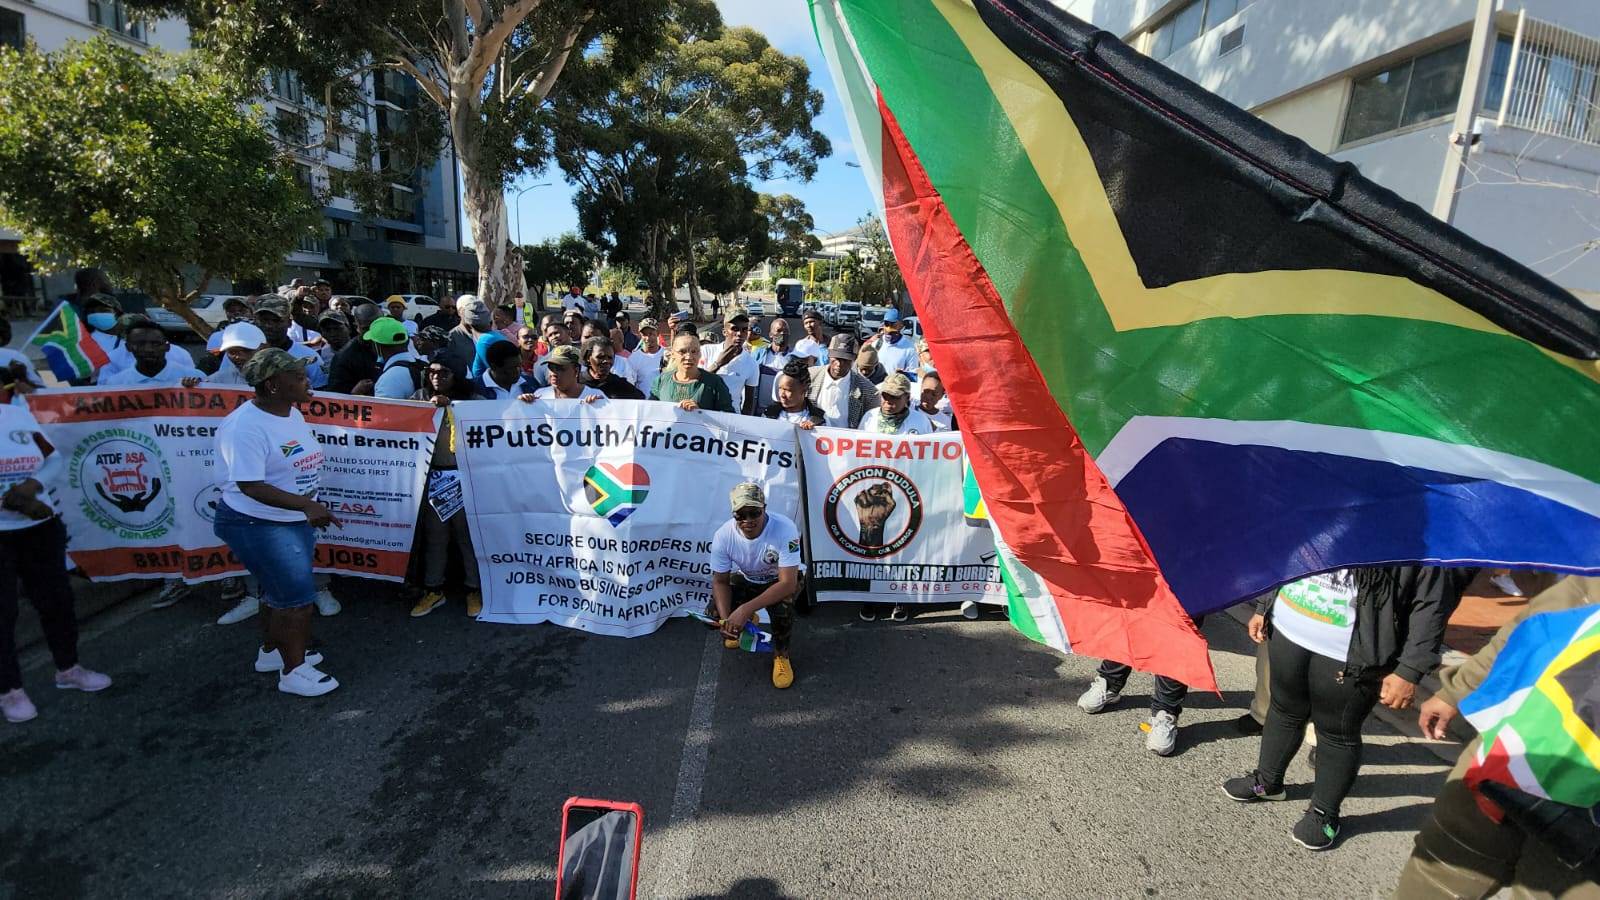 Operasie Dudula Saterdag tydens ’n optog in Kaapstad se middestad.  Foto: Jaco Marais